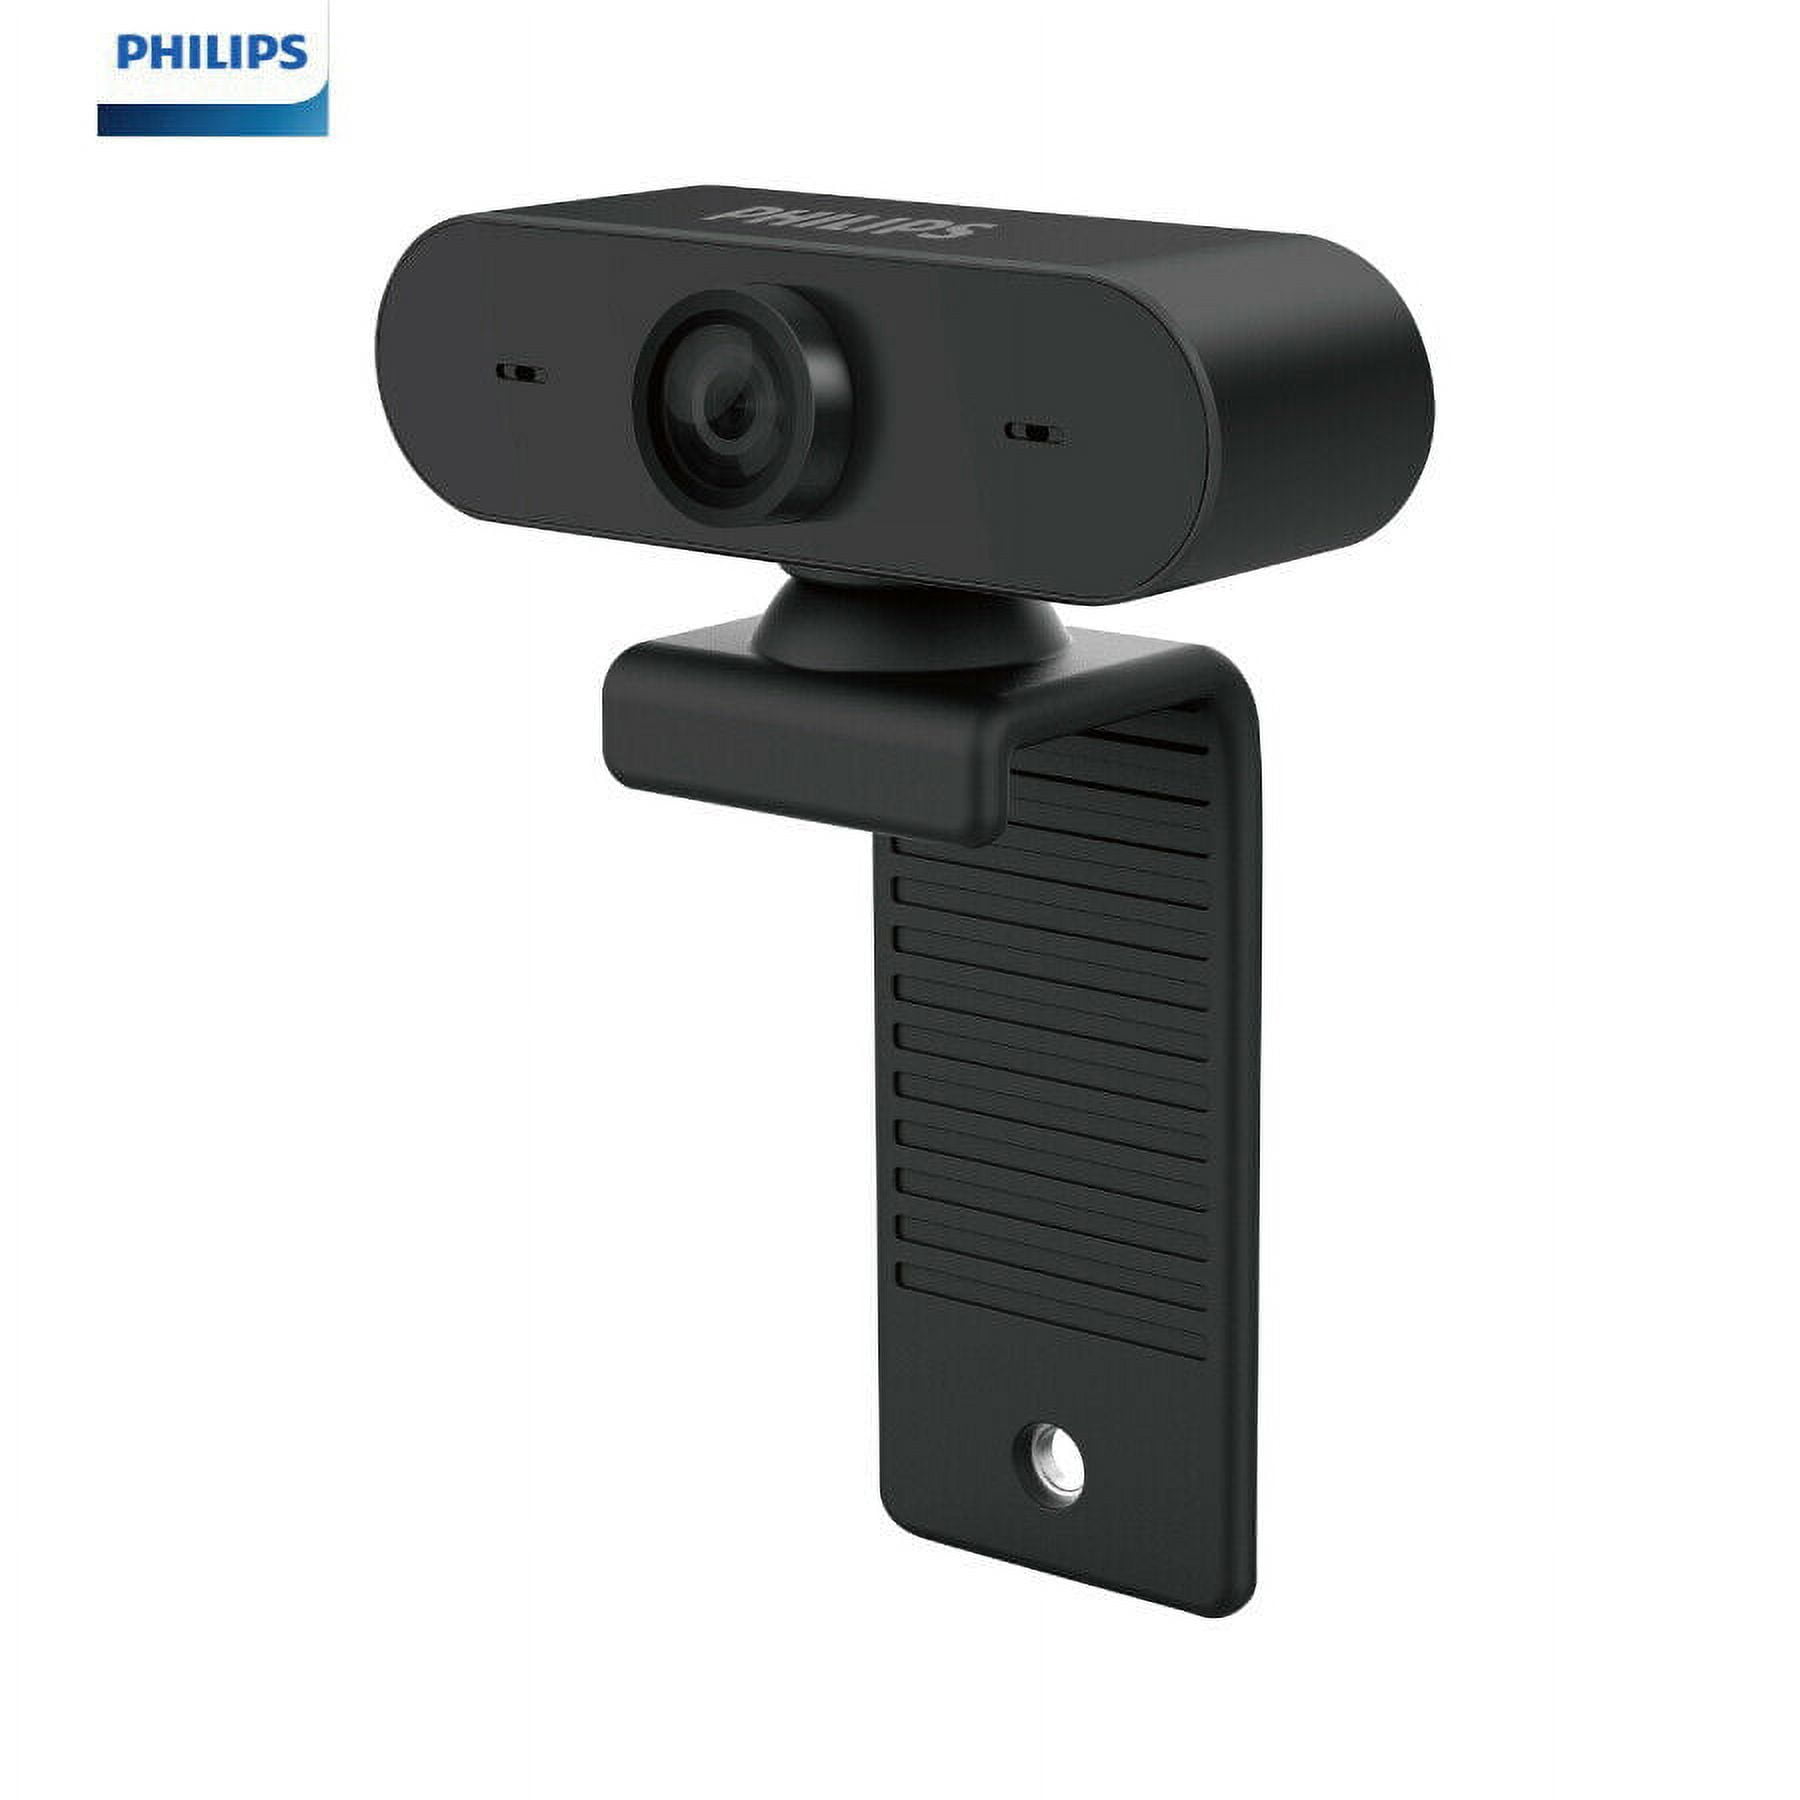 Philips lanza un monitor con una webcam que se esconde cuando no la usamos